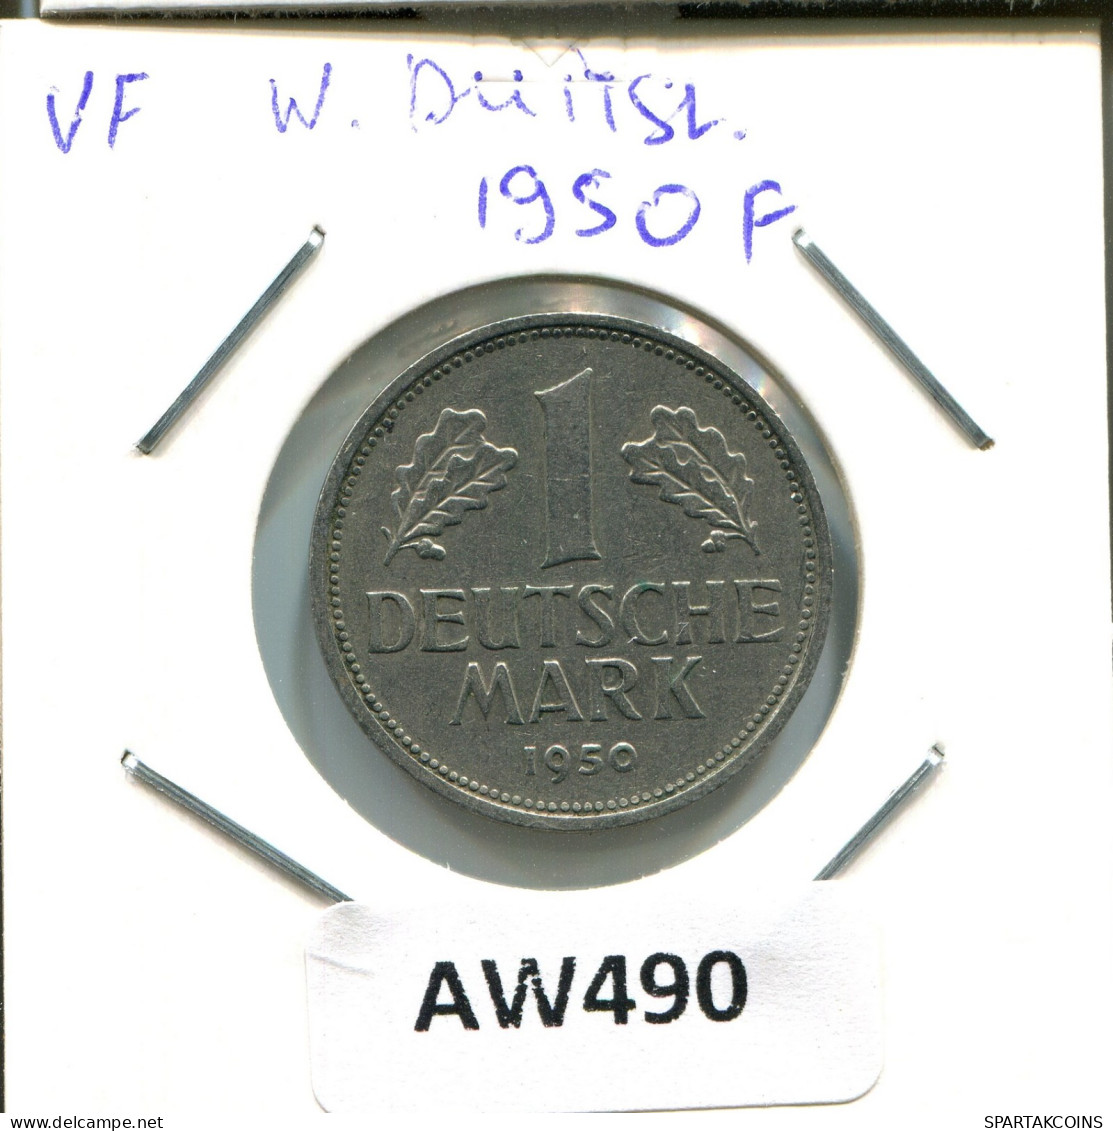 1 DM 1950 F ALEMANIA Moneda GERMANY #AW490.E.A - 1 Marco